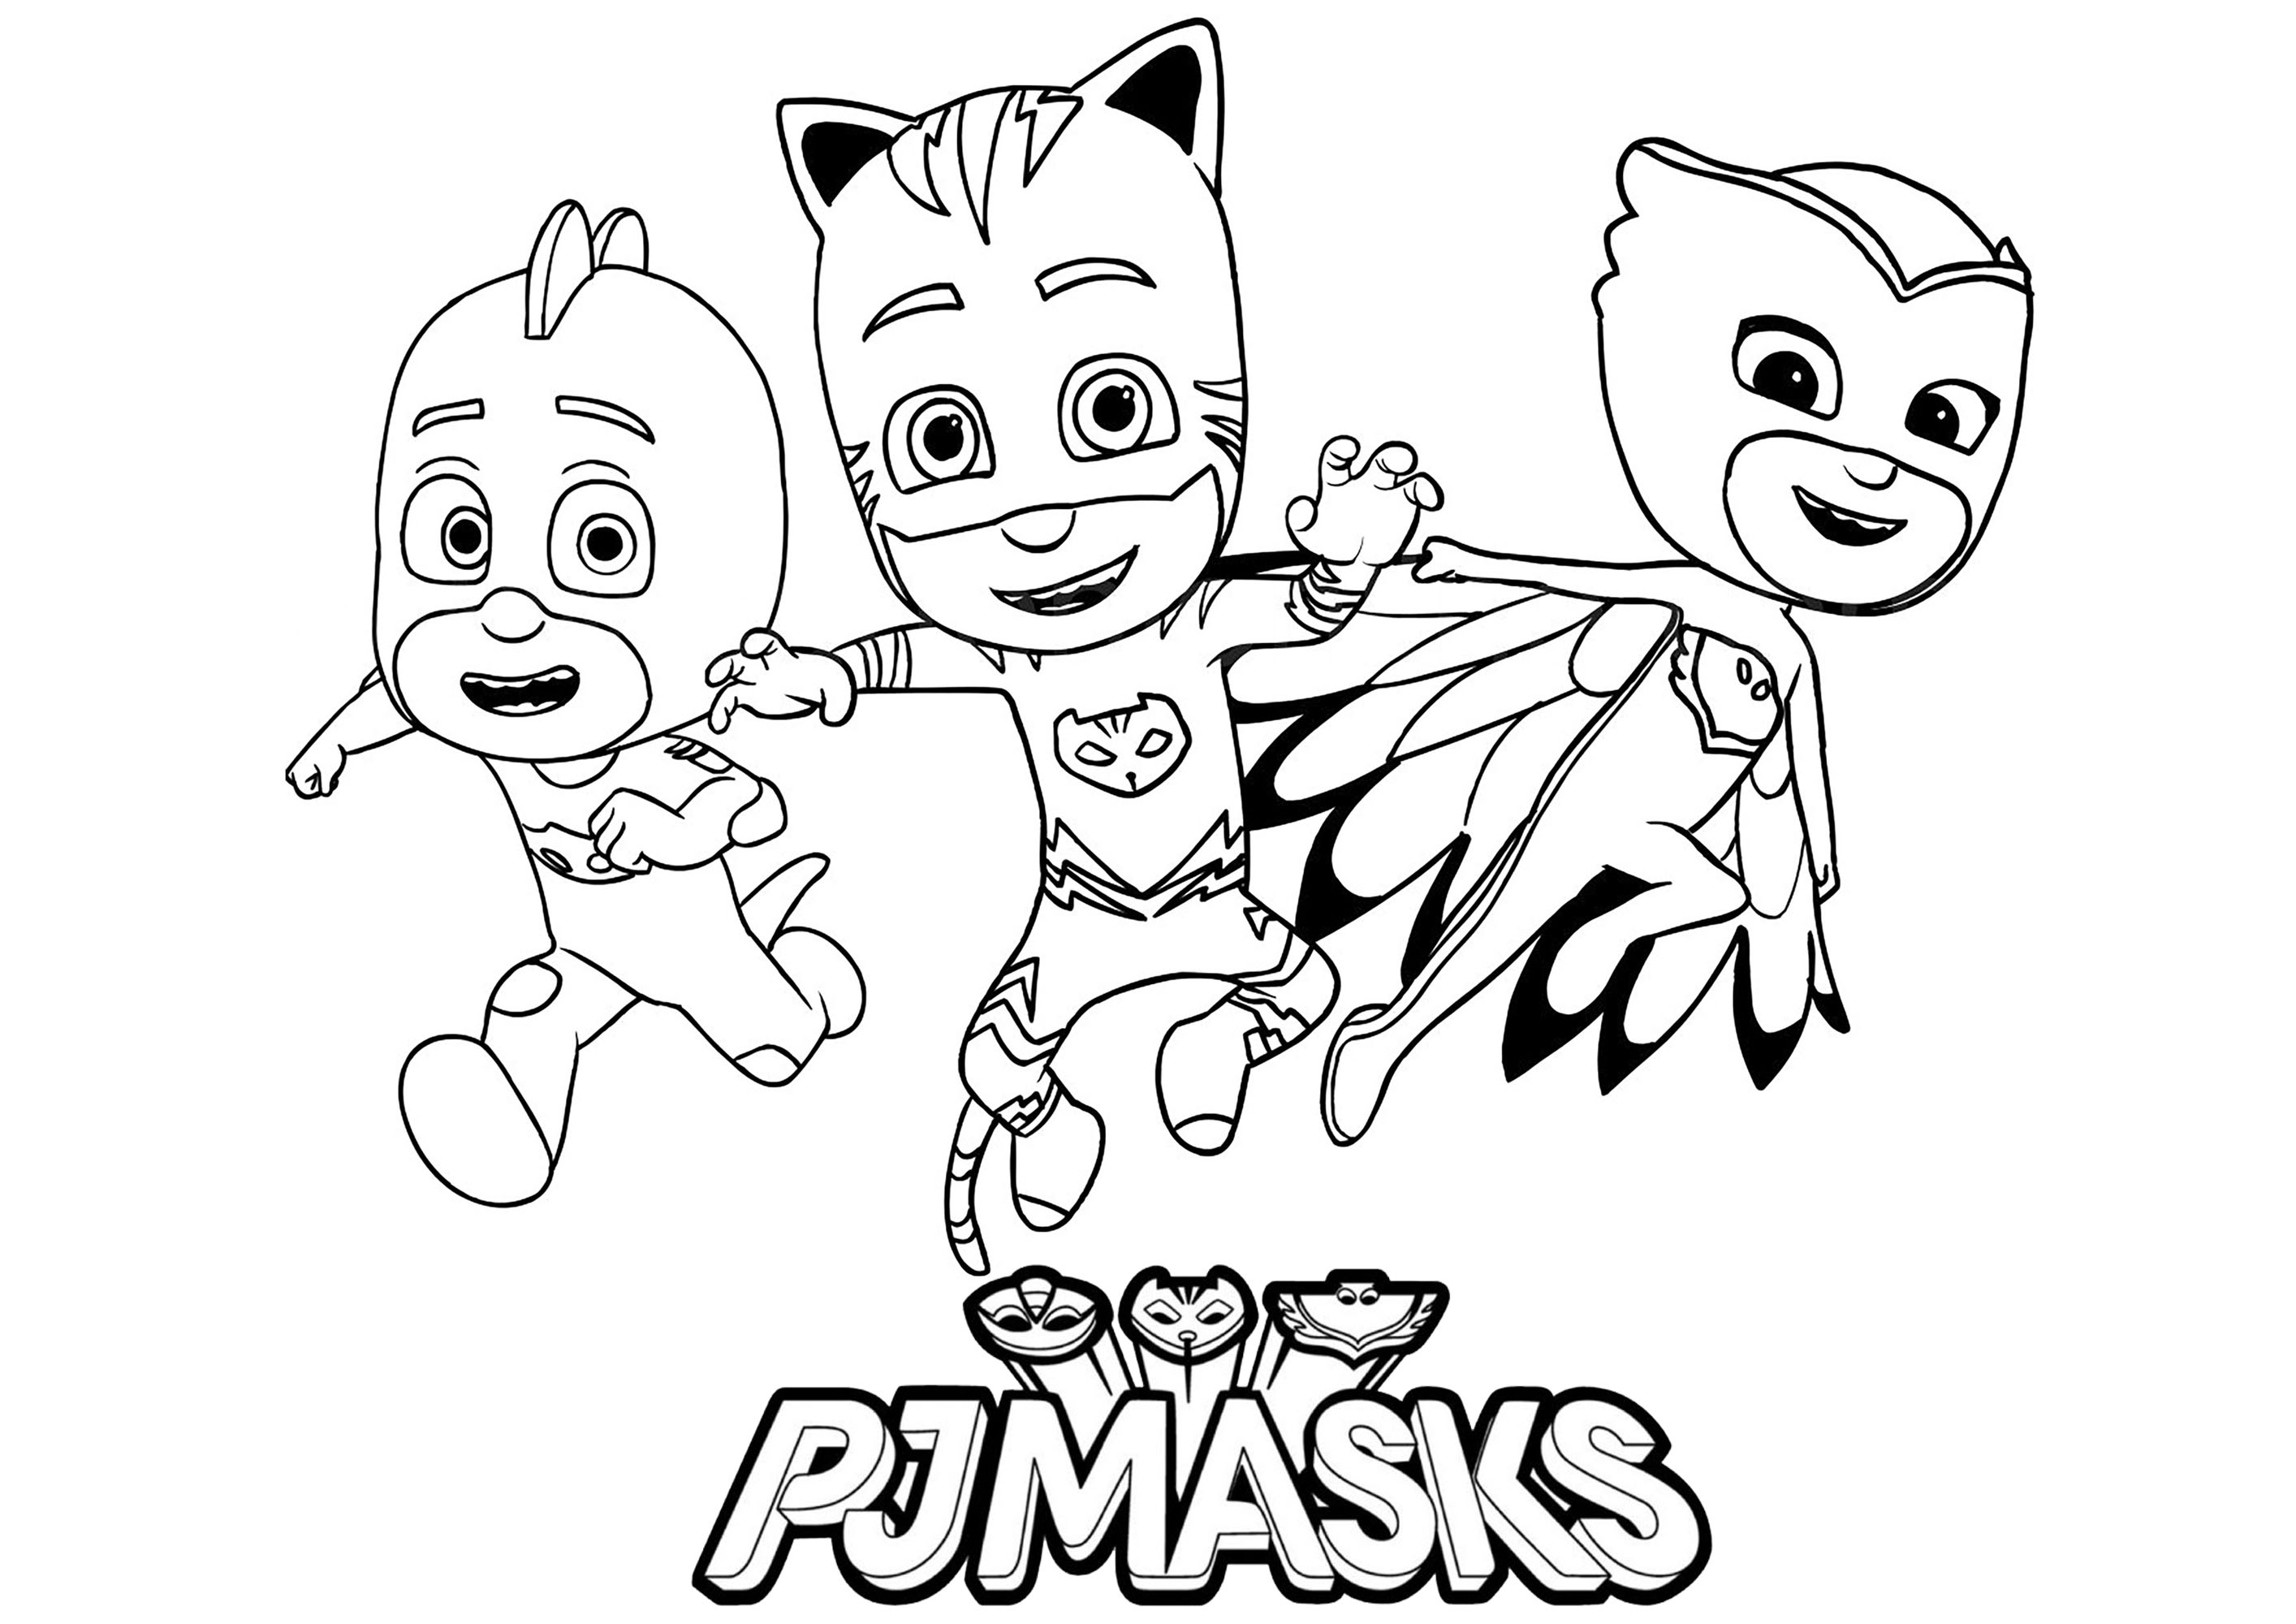 Pj masks for children - PJ Masks Kids Coloring Pages